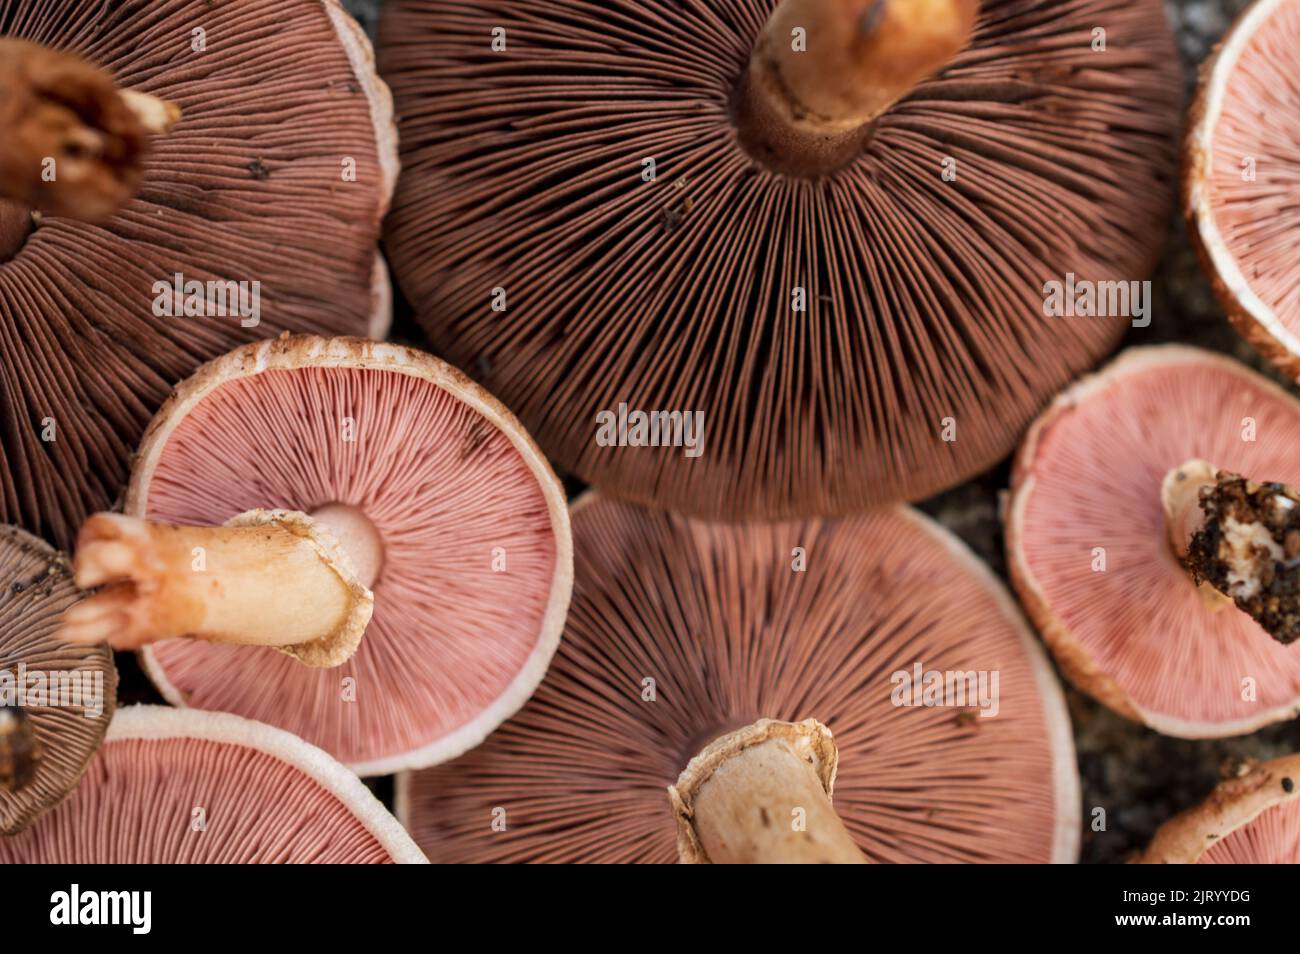 Un champignon est le corps charnu, spore portant la fructification d'un champignon, généralement produit au-dessus du sol, sur le sol ou sur sa source alimentaire. Banque D'Images